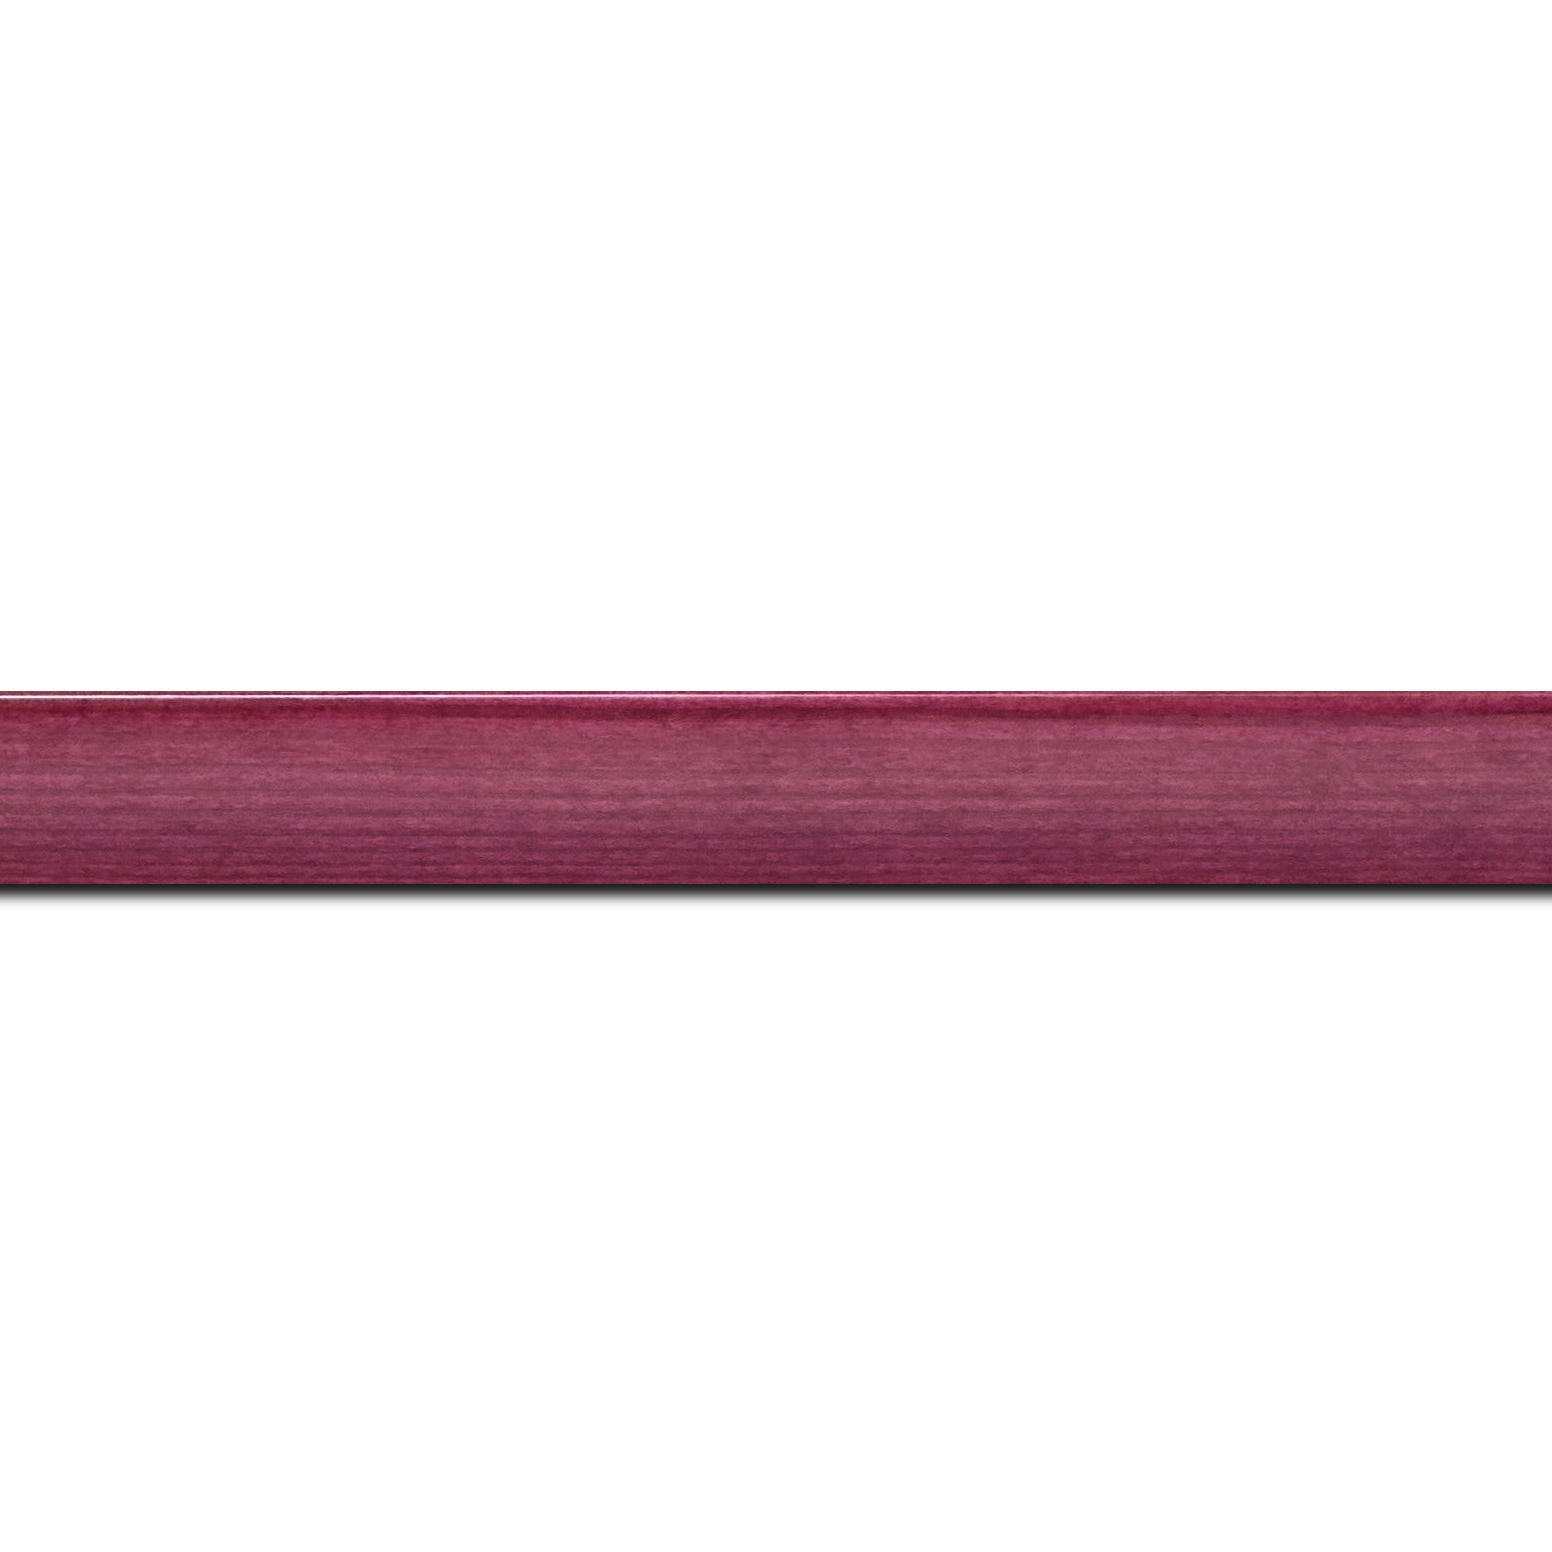 Pack par 12m, bois profil arrondi en pente plongeant largeur 2.4cm couleur rose fushia  finition vernis brillant,veine du bois  apparent (pin) ,  (longueur baguette pouvant varier entre 2.40m et 3m selon arrivage des bois)